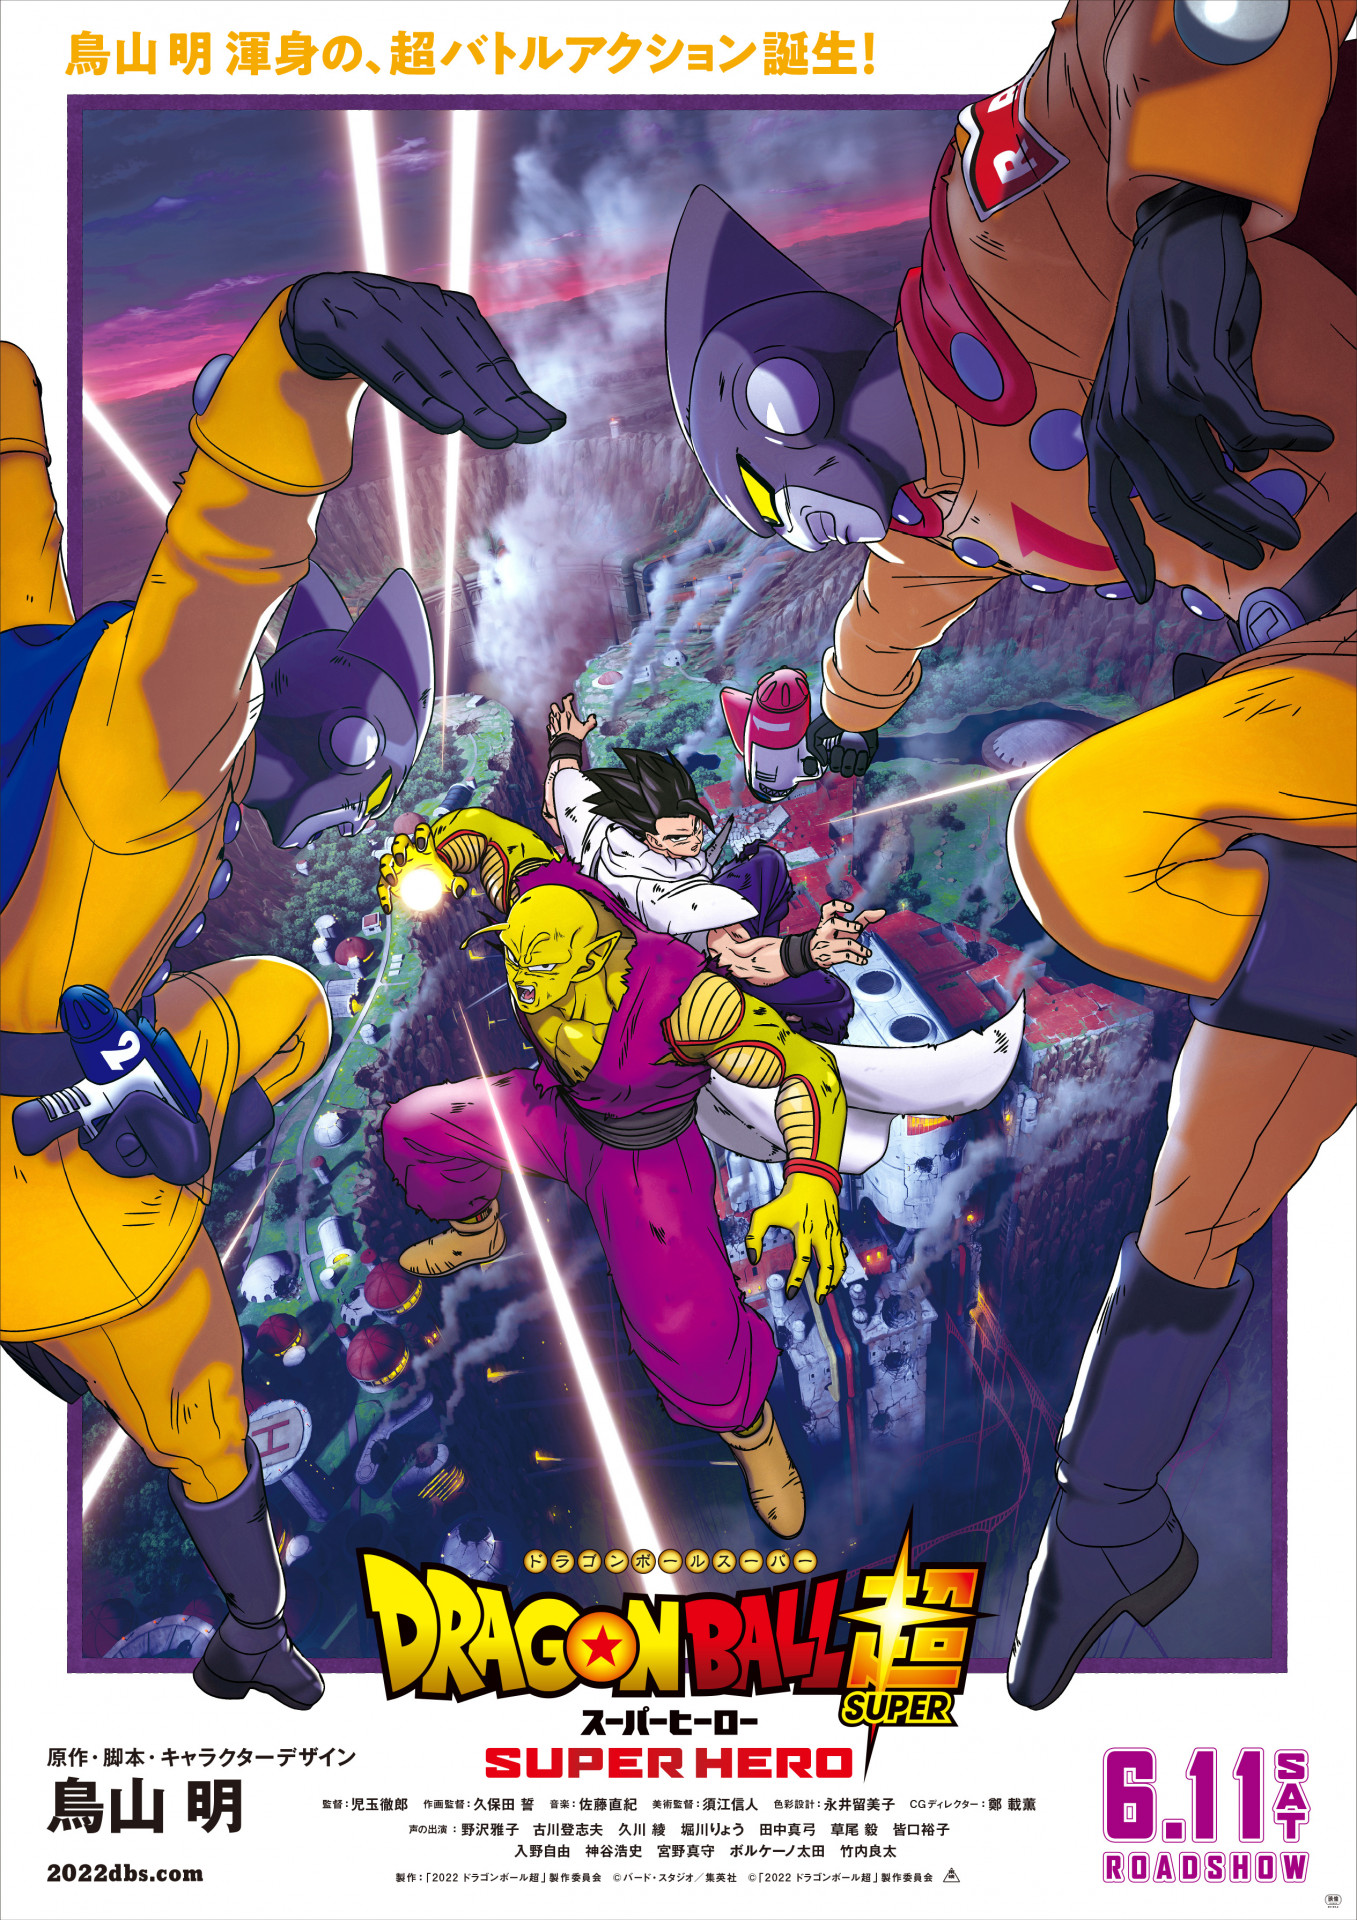 Dragon Ball Super revela nome original da nova transformação de Gohan